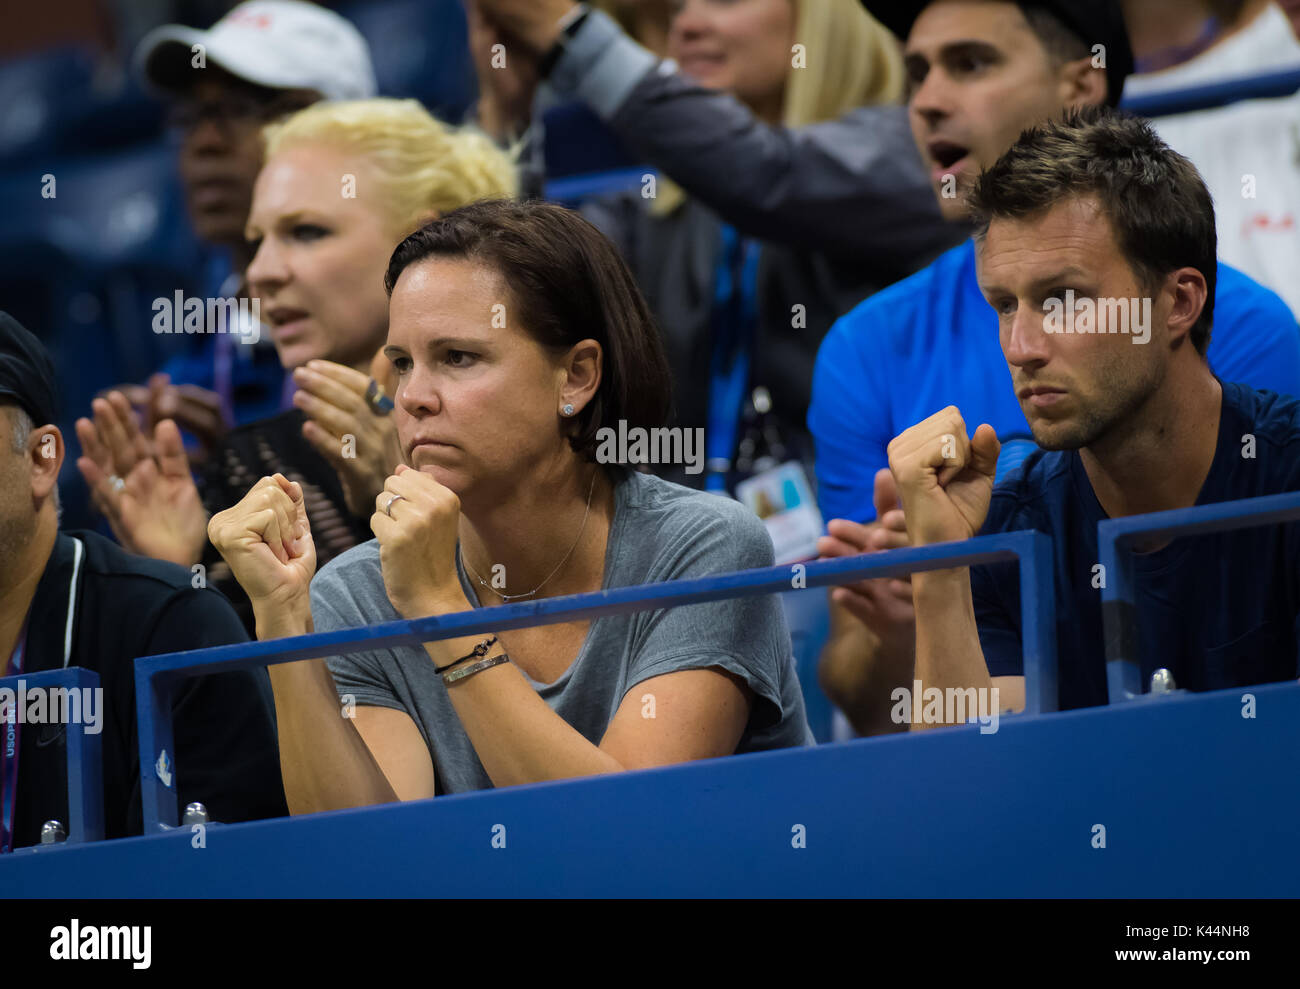 La città di New York, Stati Uniti. Il 4 settembre, 2017. Lindsay Davenport al 2017 US Open Grand Slam Tennis Tournament © Jimmie48 Fotografia/Alamy Live News Foto Stock